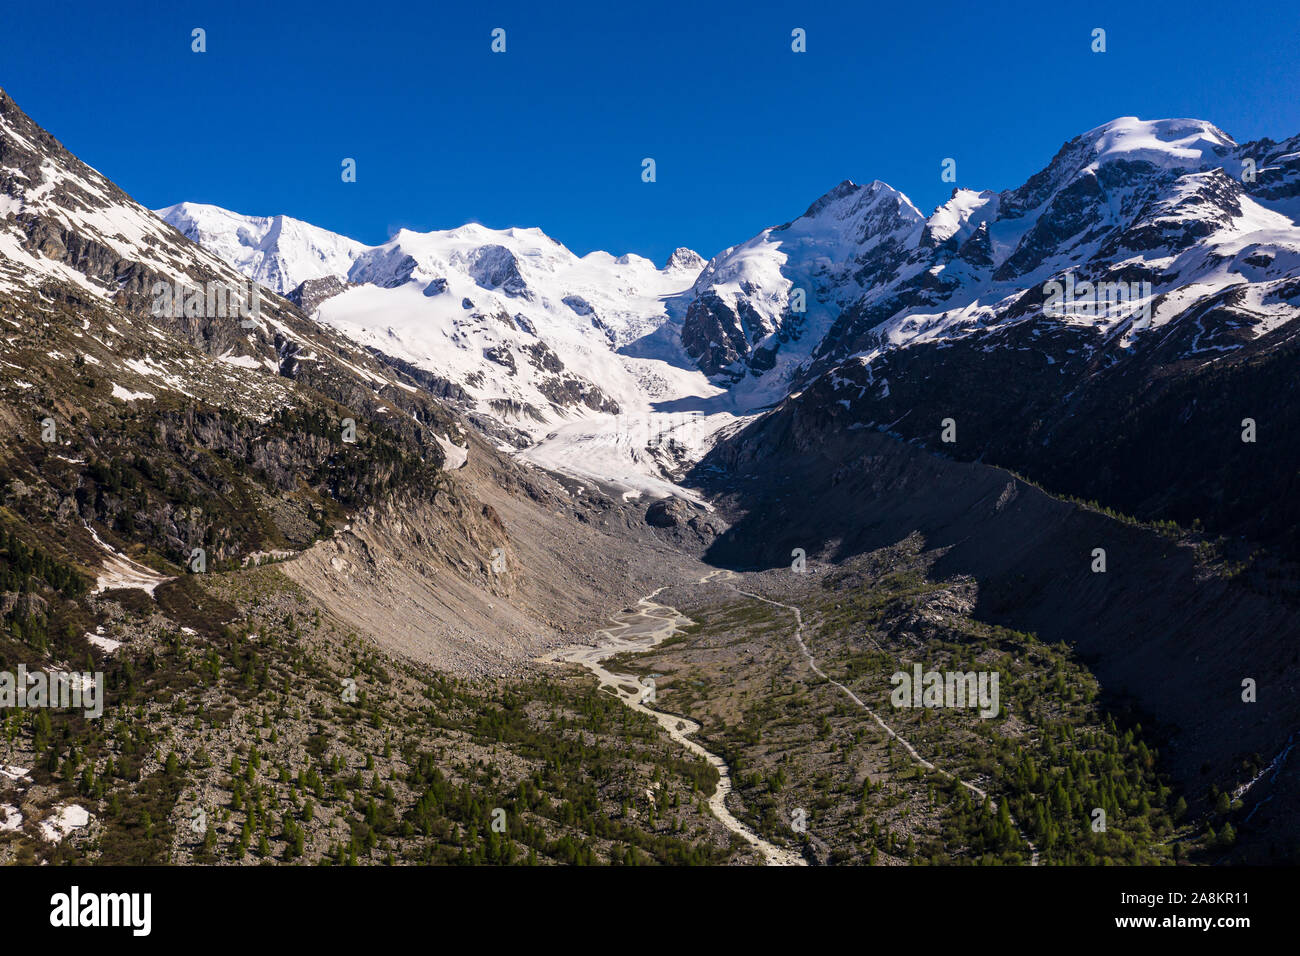 Incredibile vista aerea del Bernina in montagna e sul ghiacciaio, che la fusione è veloce, nelle alpi nel Grigioni in Svizzera Foto Stock